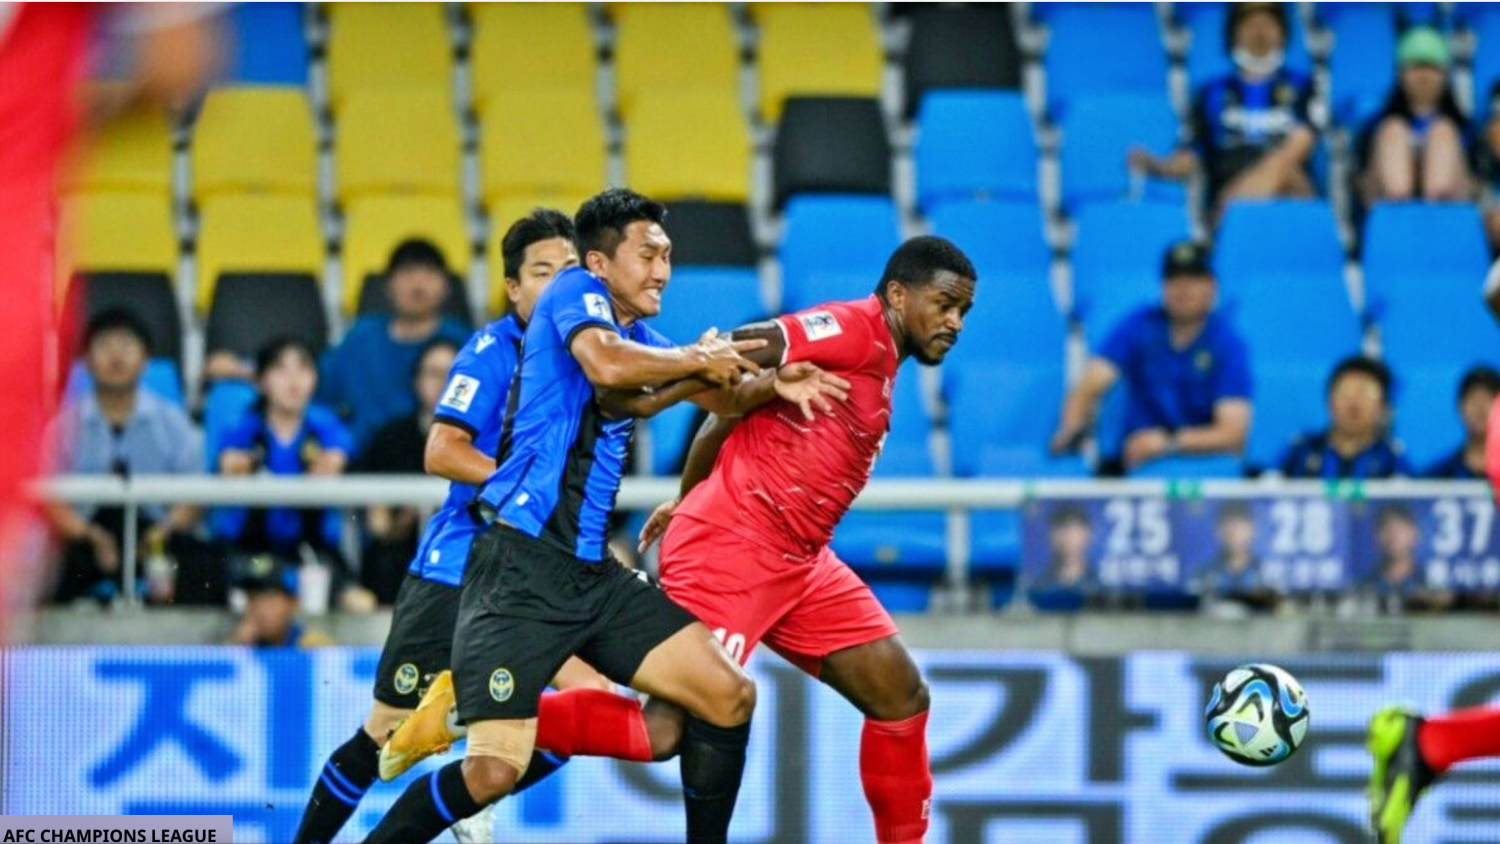 Review Hải Phòng vs Incheon United 19 giờ 30 địa phương tức 17 giờ 30 giờ VN - Ảnh 2.